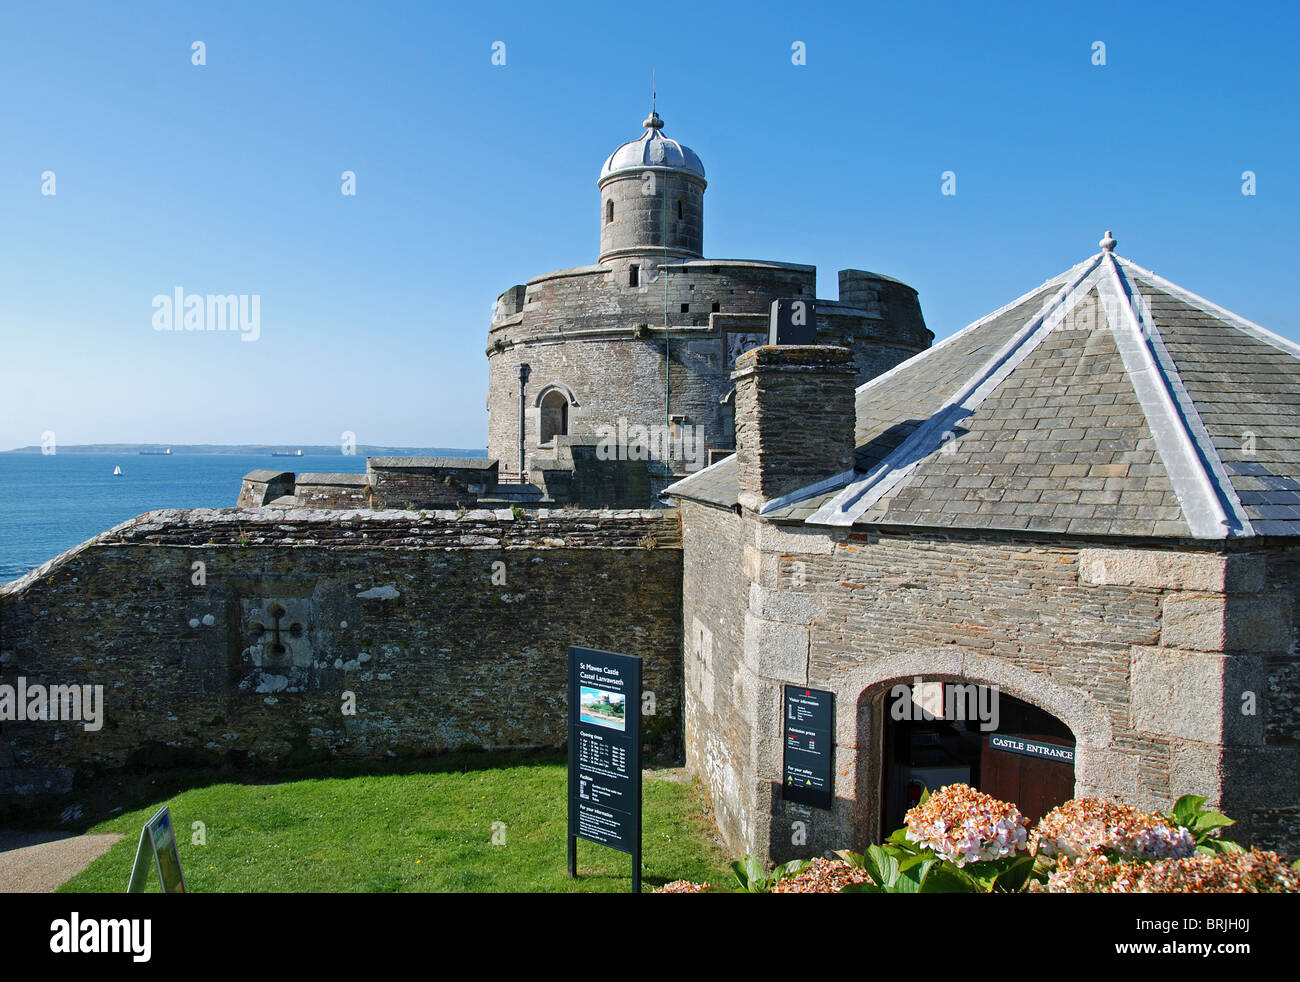 St mawes,château surplombant la baie de Falmouth, à Cornwall, uk Banque D'Images